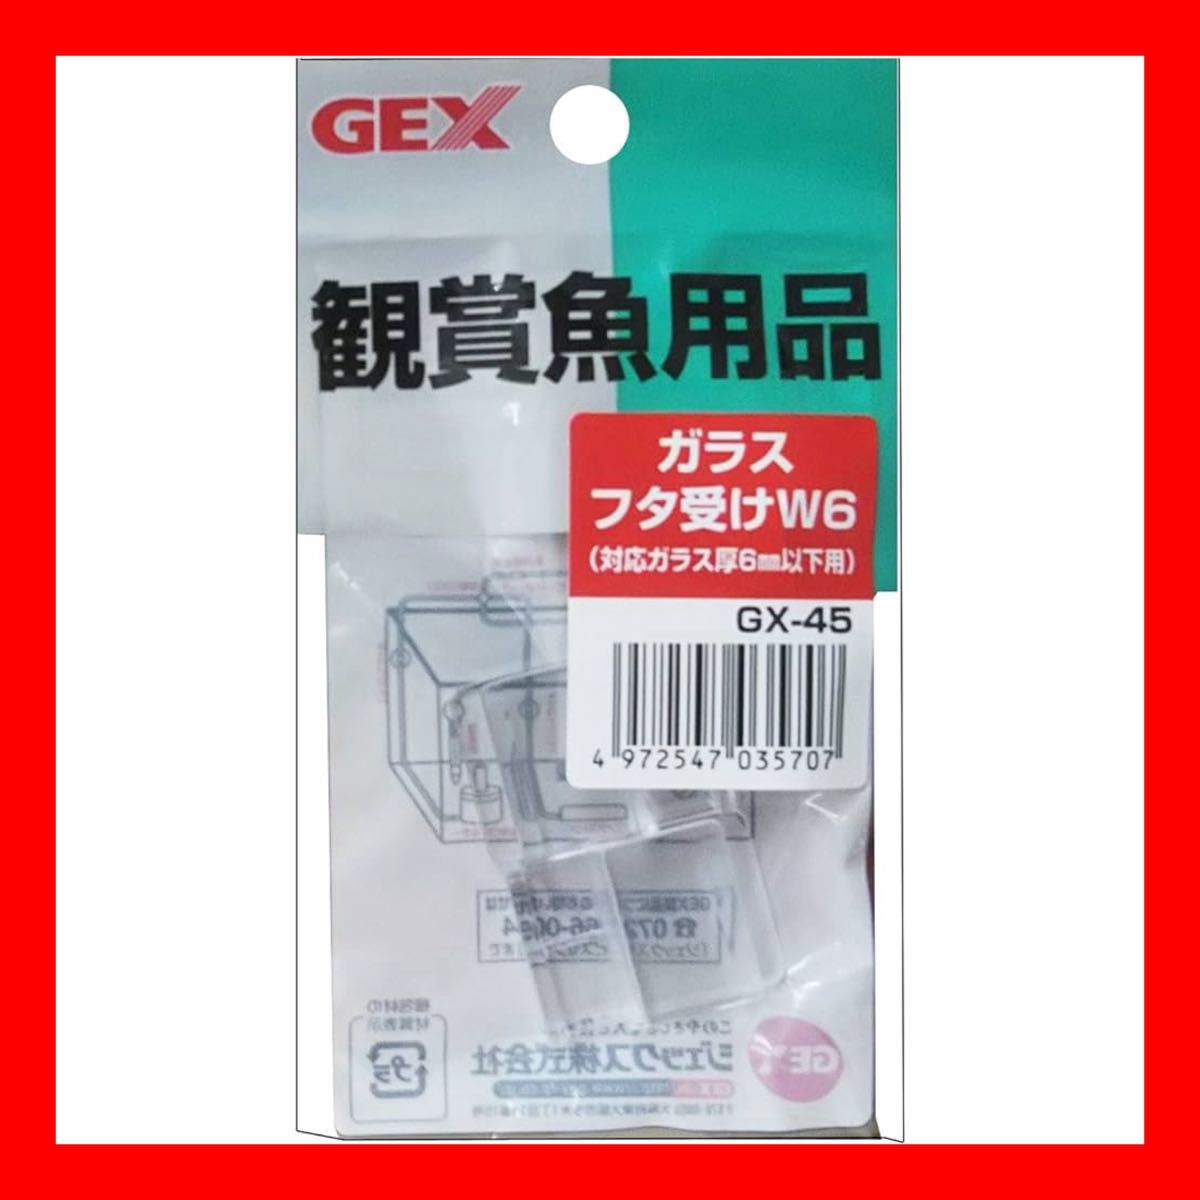 GEX GX-45 ガラスフタ受けW6(対応ガラス厚6mm以下用